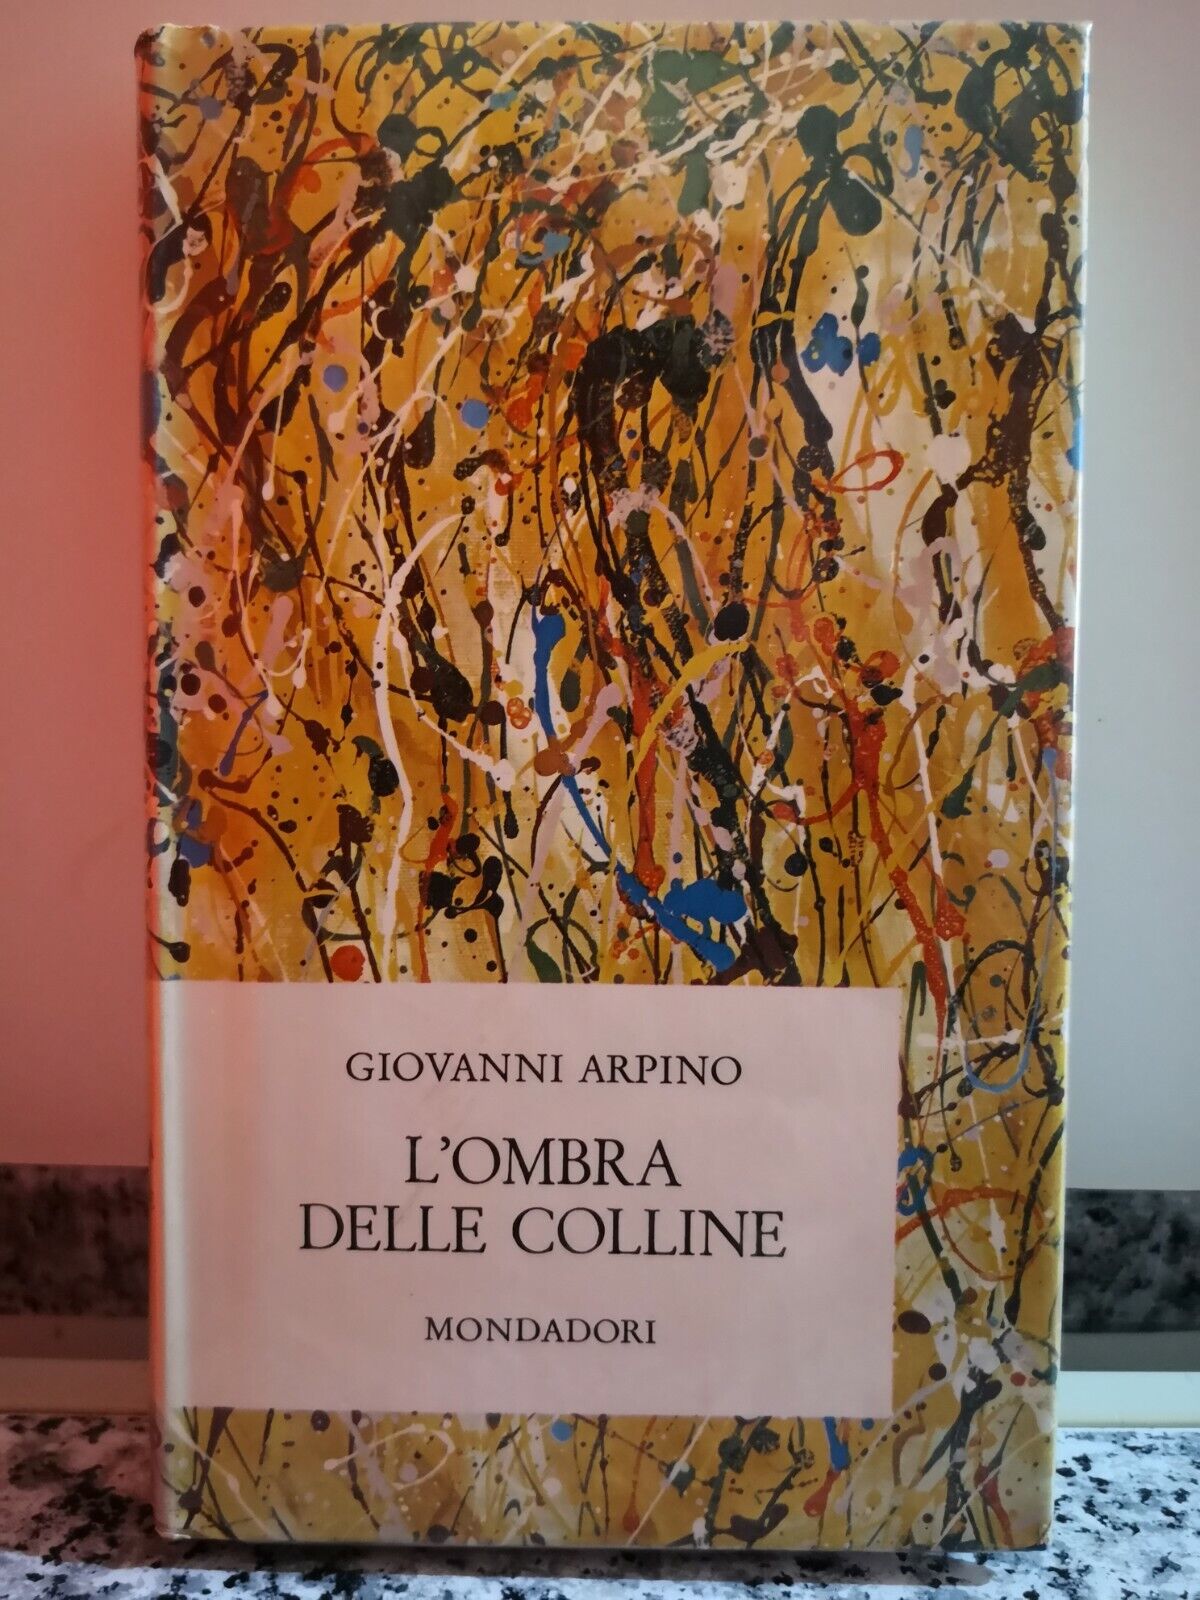  L'Ombra delle colline  di Giovanni Arpino,  1964,  Arnoldo Mondadori-F